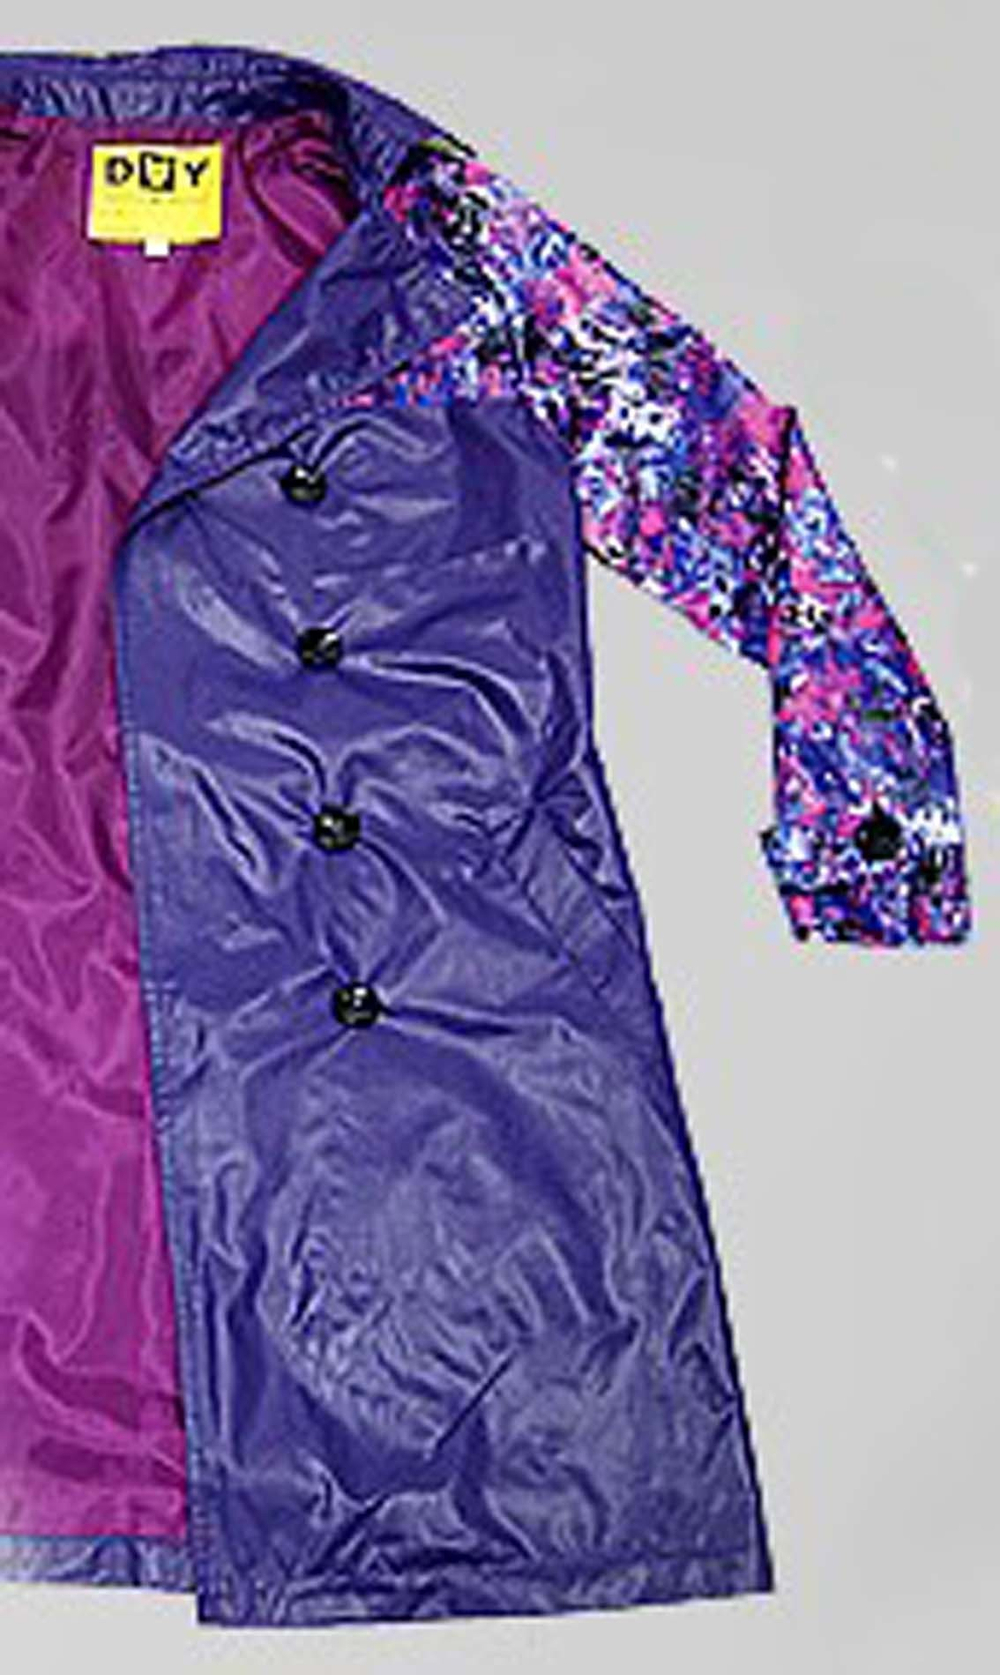 DAY Плащ для девочки V2011 фиолетовый с цветочным принтом